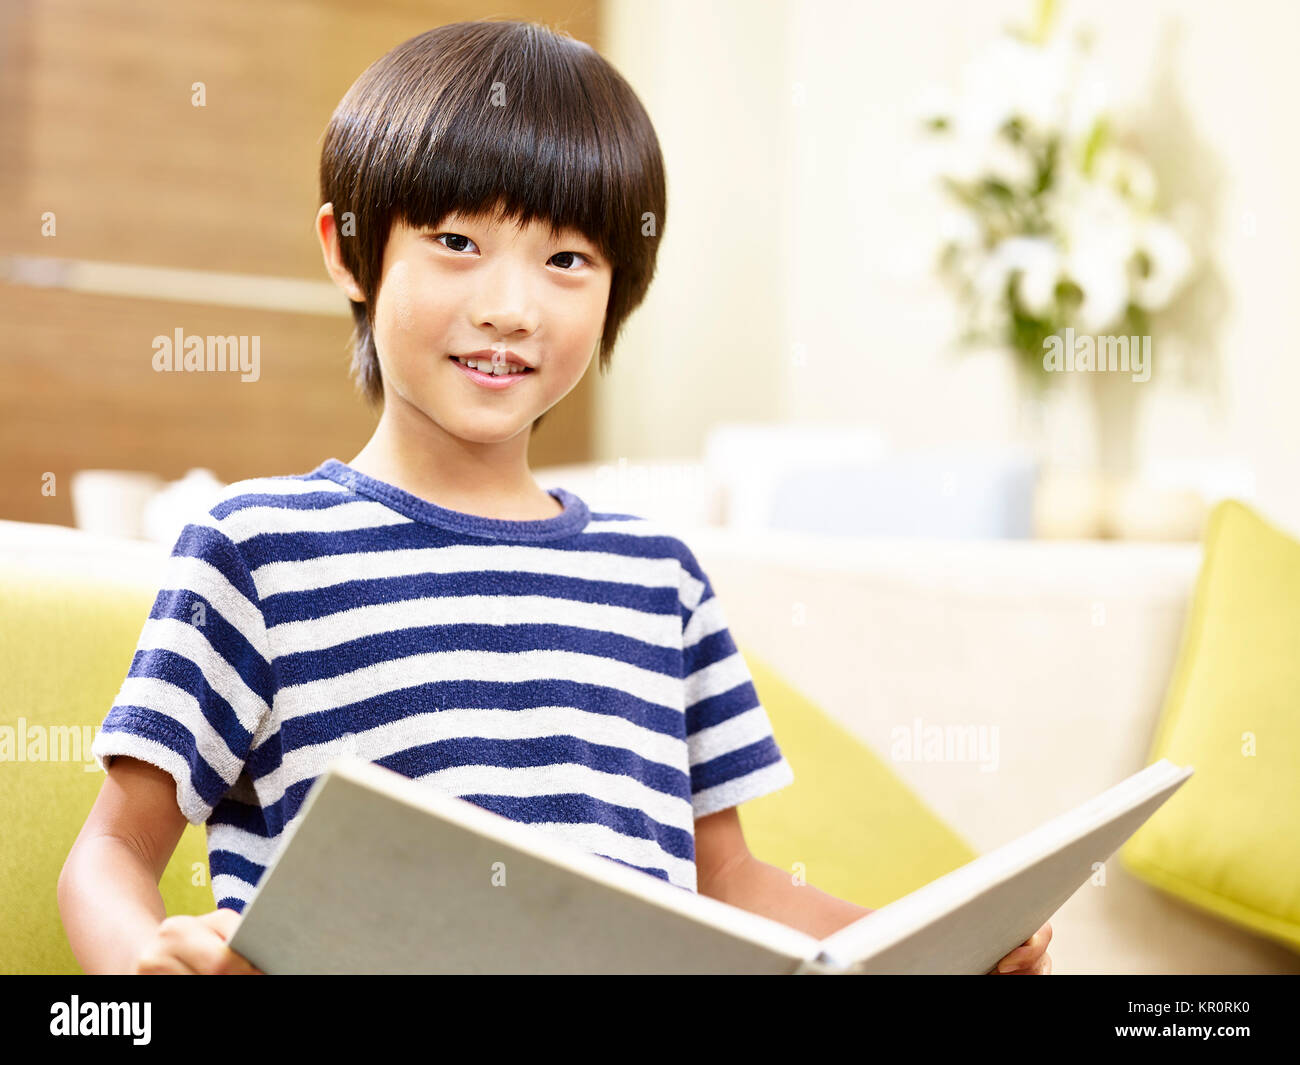 7 ans, petit garçon asiatique assis sur la table tenant un livre à la caméra en souriant. Banque D'Images